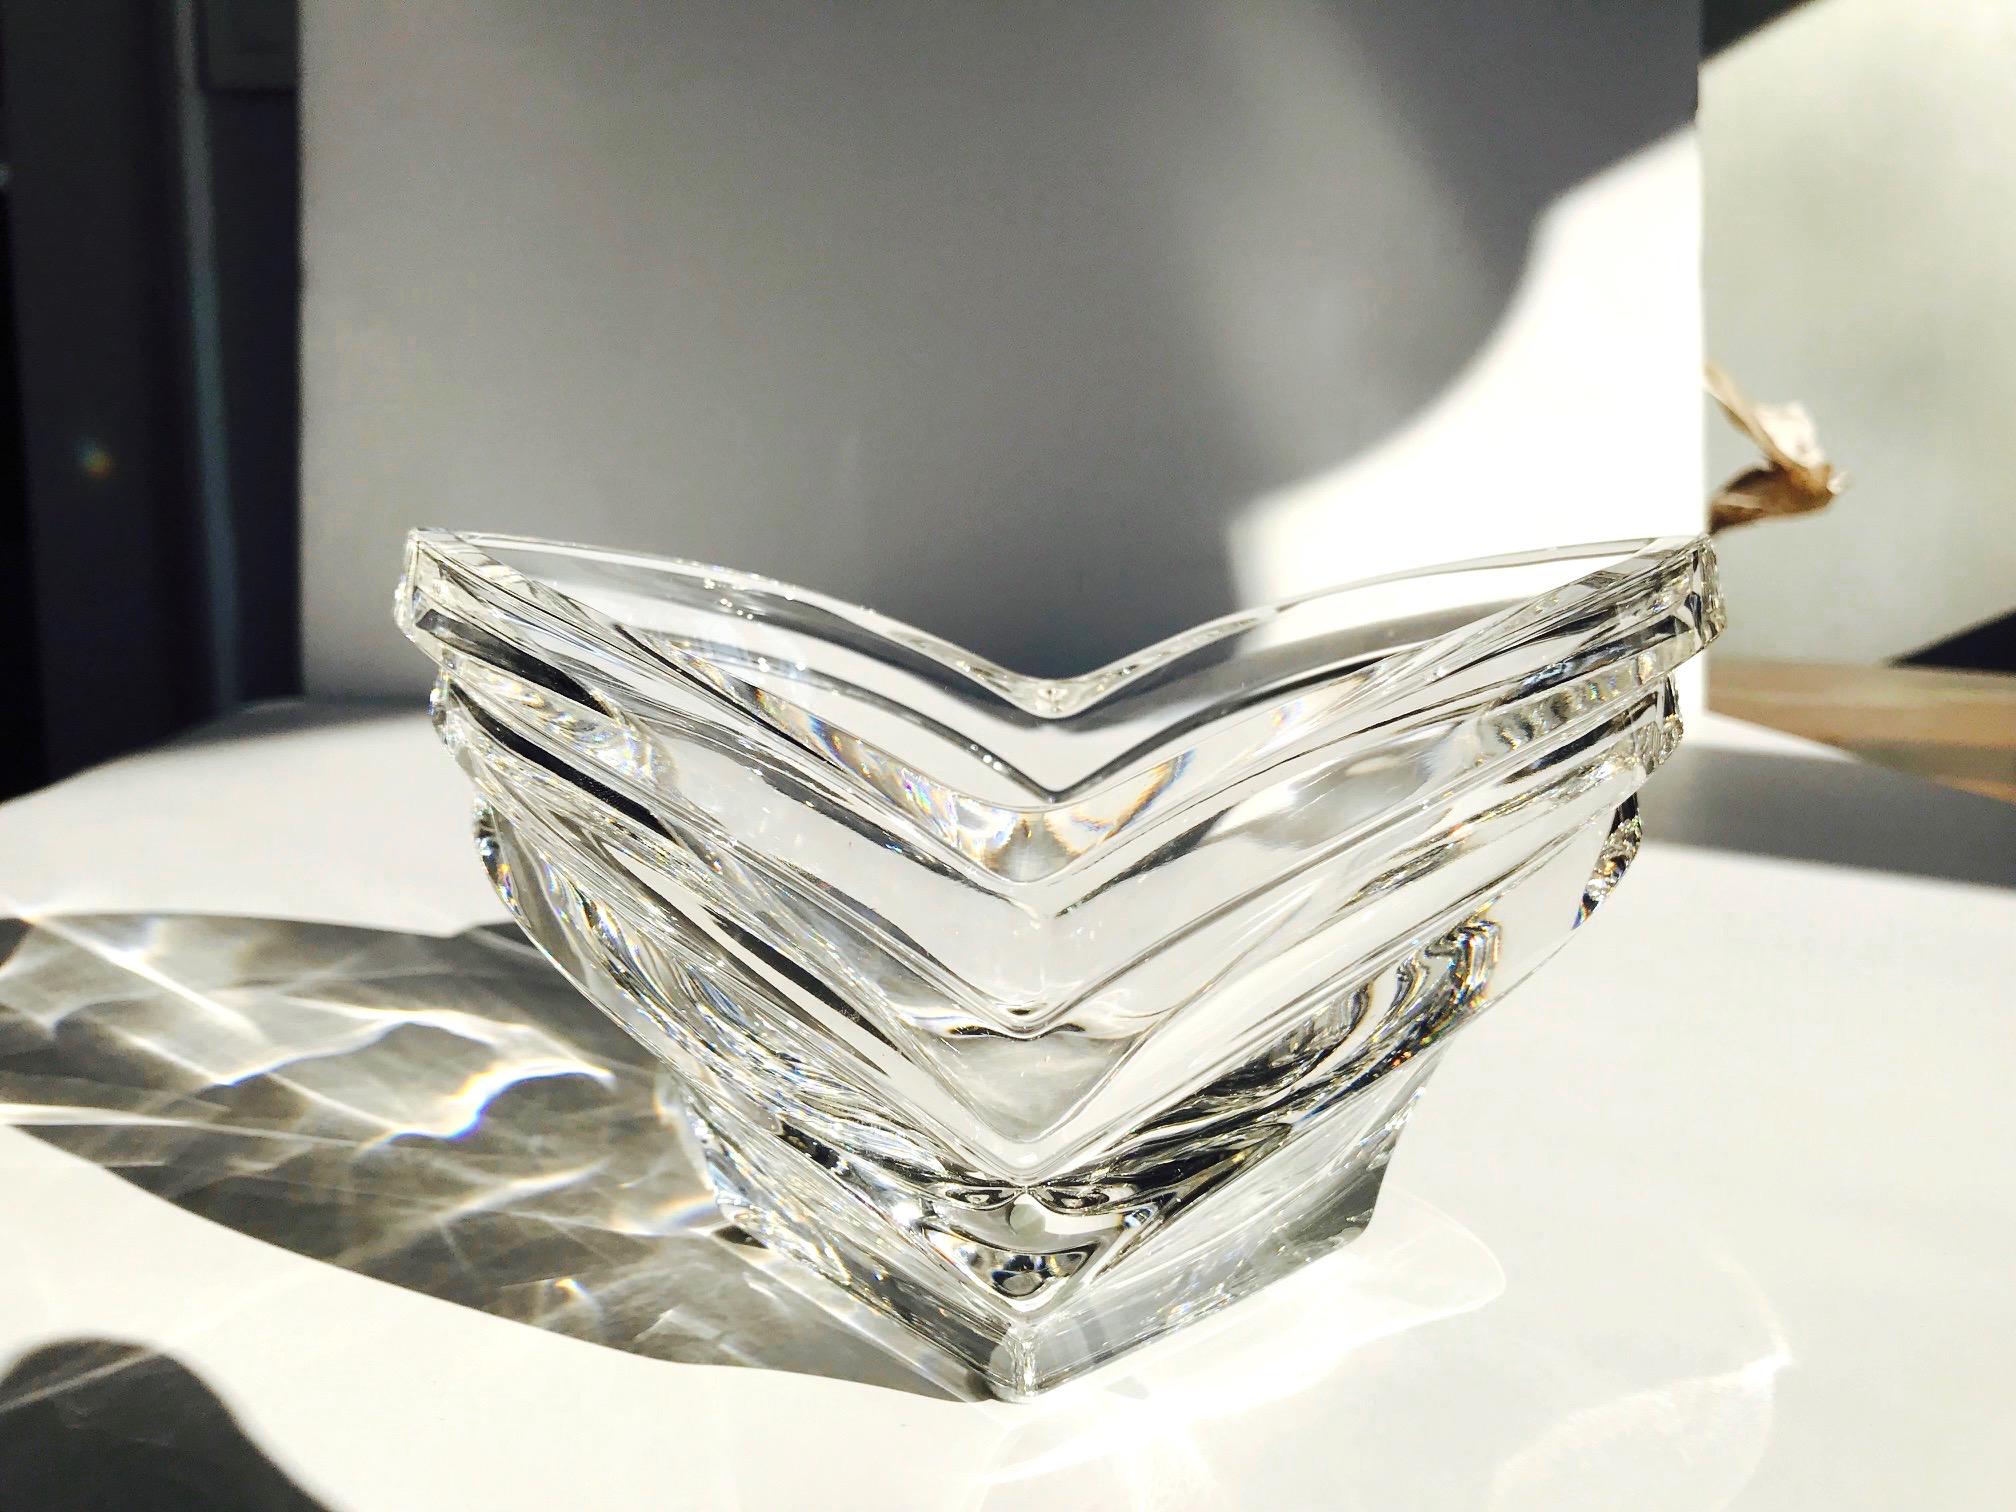 Moderne Kristallschale aus der Jahrhundertmitte mit geometrisch geriffeltem Glas. Die mundgeblasene Schale weist horizontale Rillen in perfekter Symmetrie auf, die an eine Wellenformation oder vielleicht an eine knospende Blume erinnern. Reflektiert